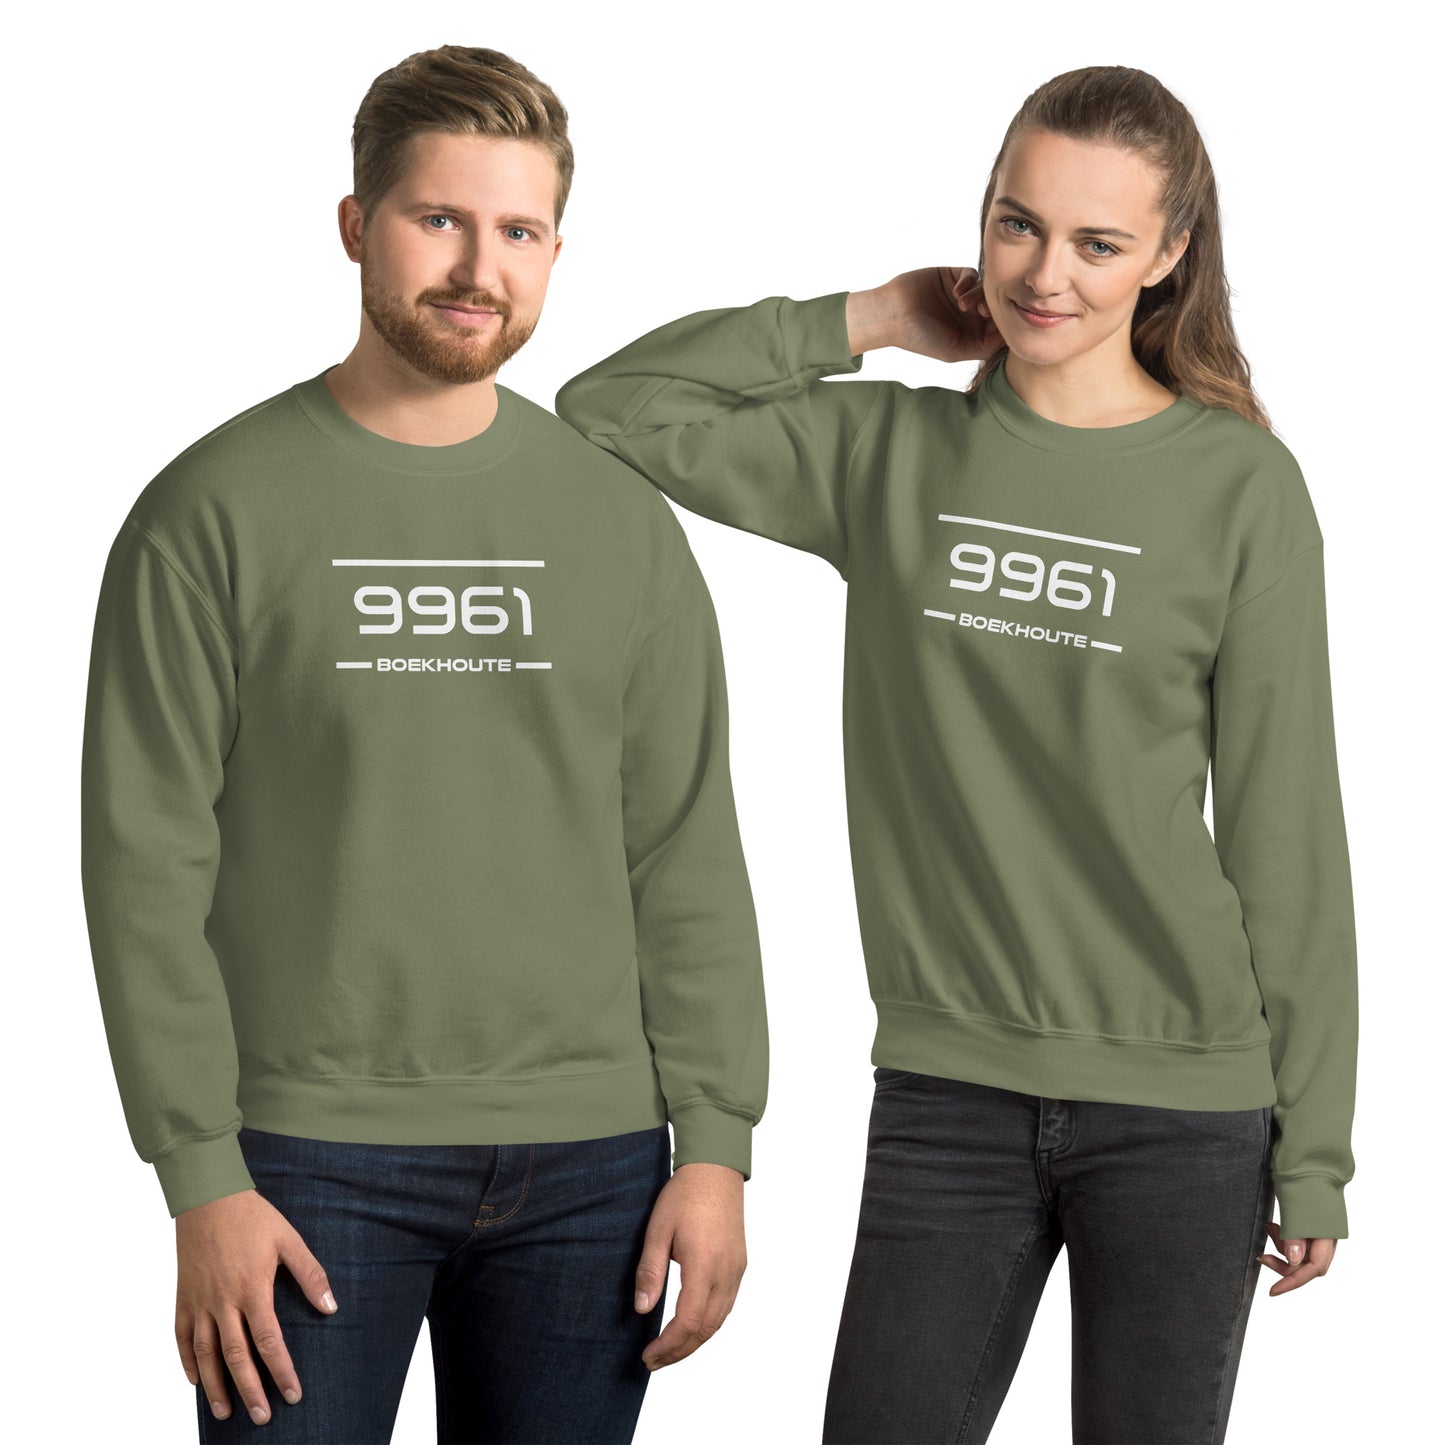 Sweater - 9961 - Boekhoute (M/V)